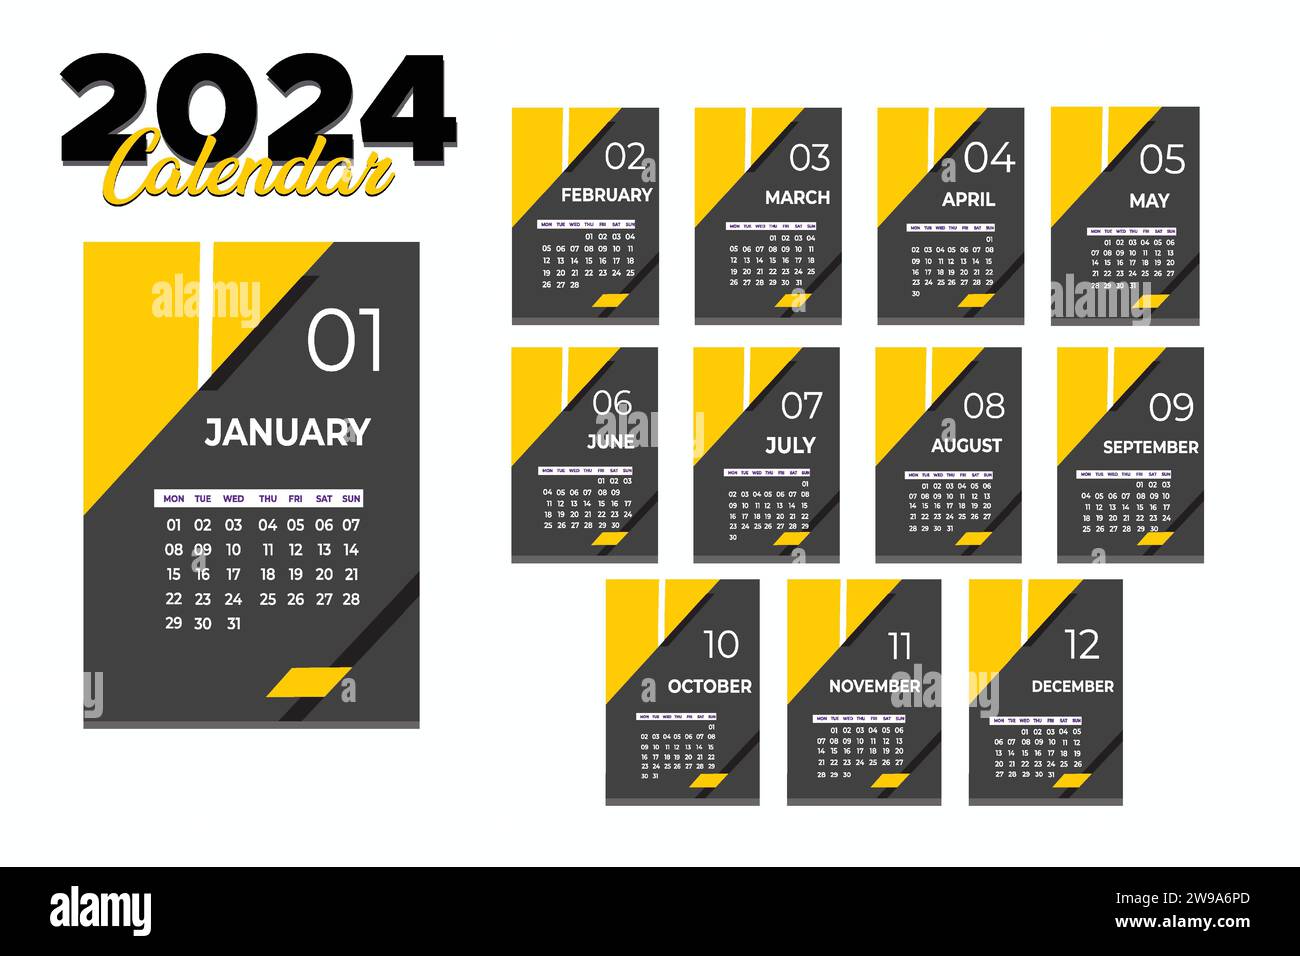 Kalender 2024 Moderne Layout Vektor-Illustration. Die Woche beginnt am Montag. Kalendersatz für 2024. Stock Vektor